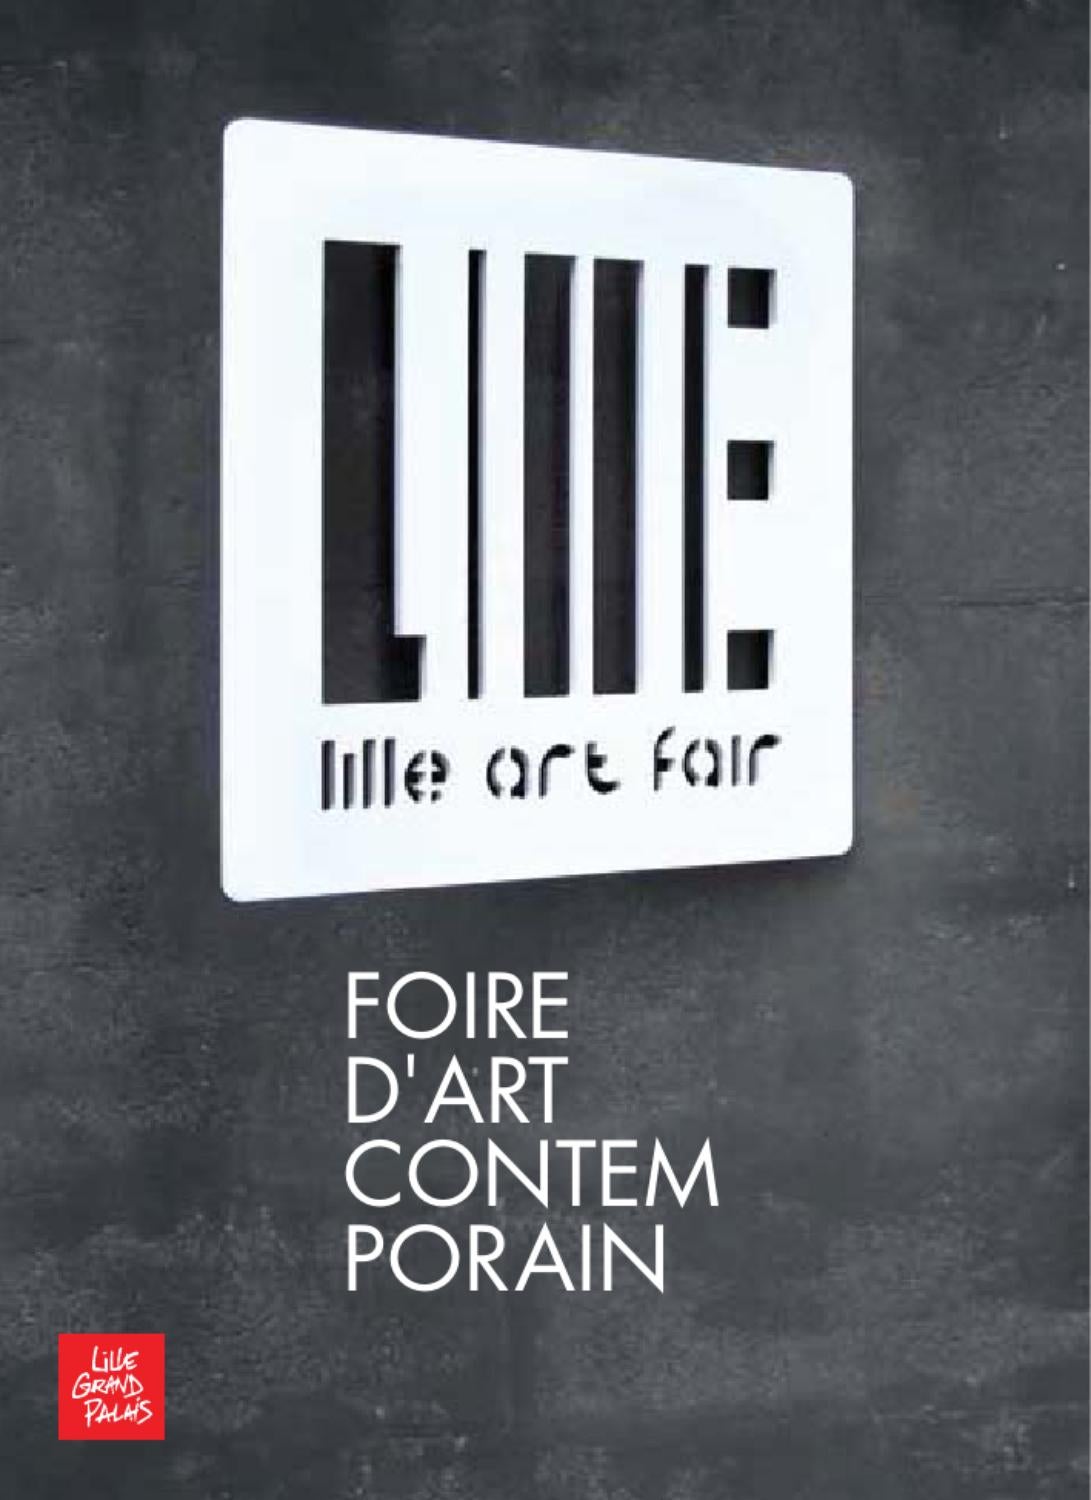 Lille Art Fair – Francia – 2013